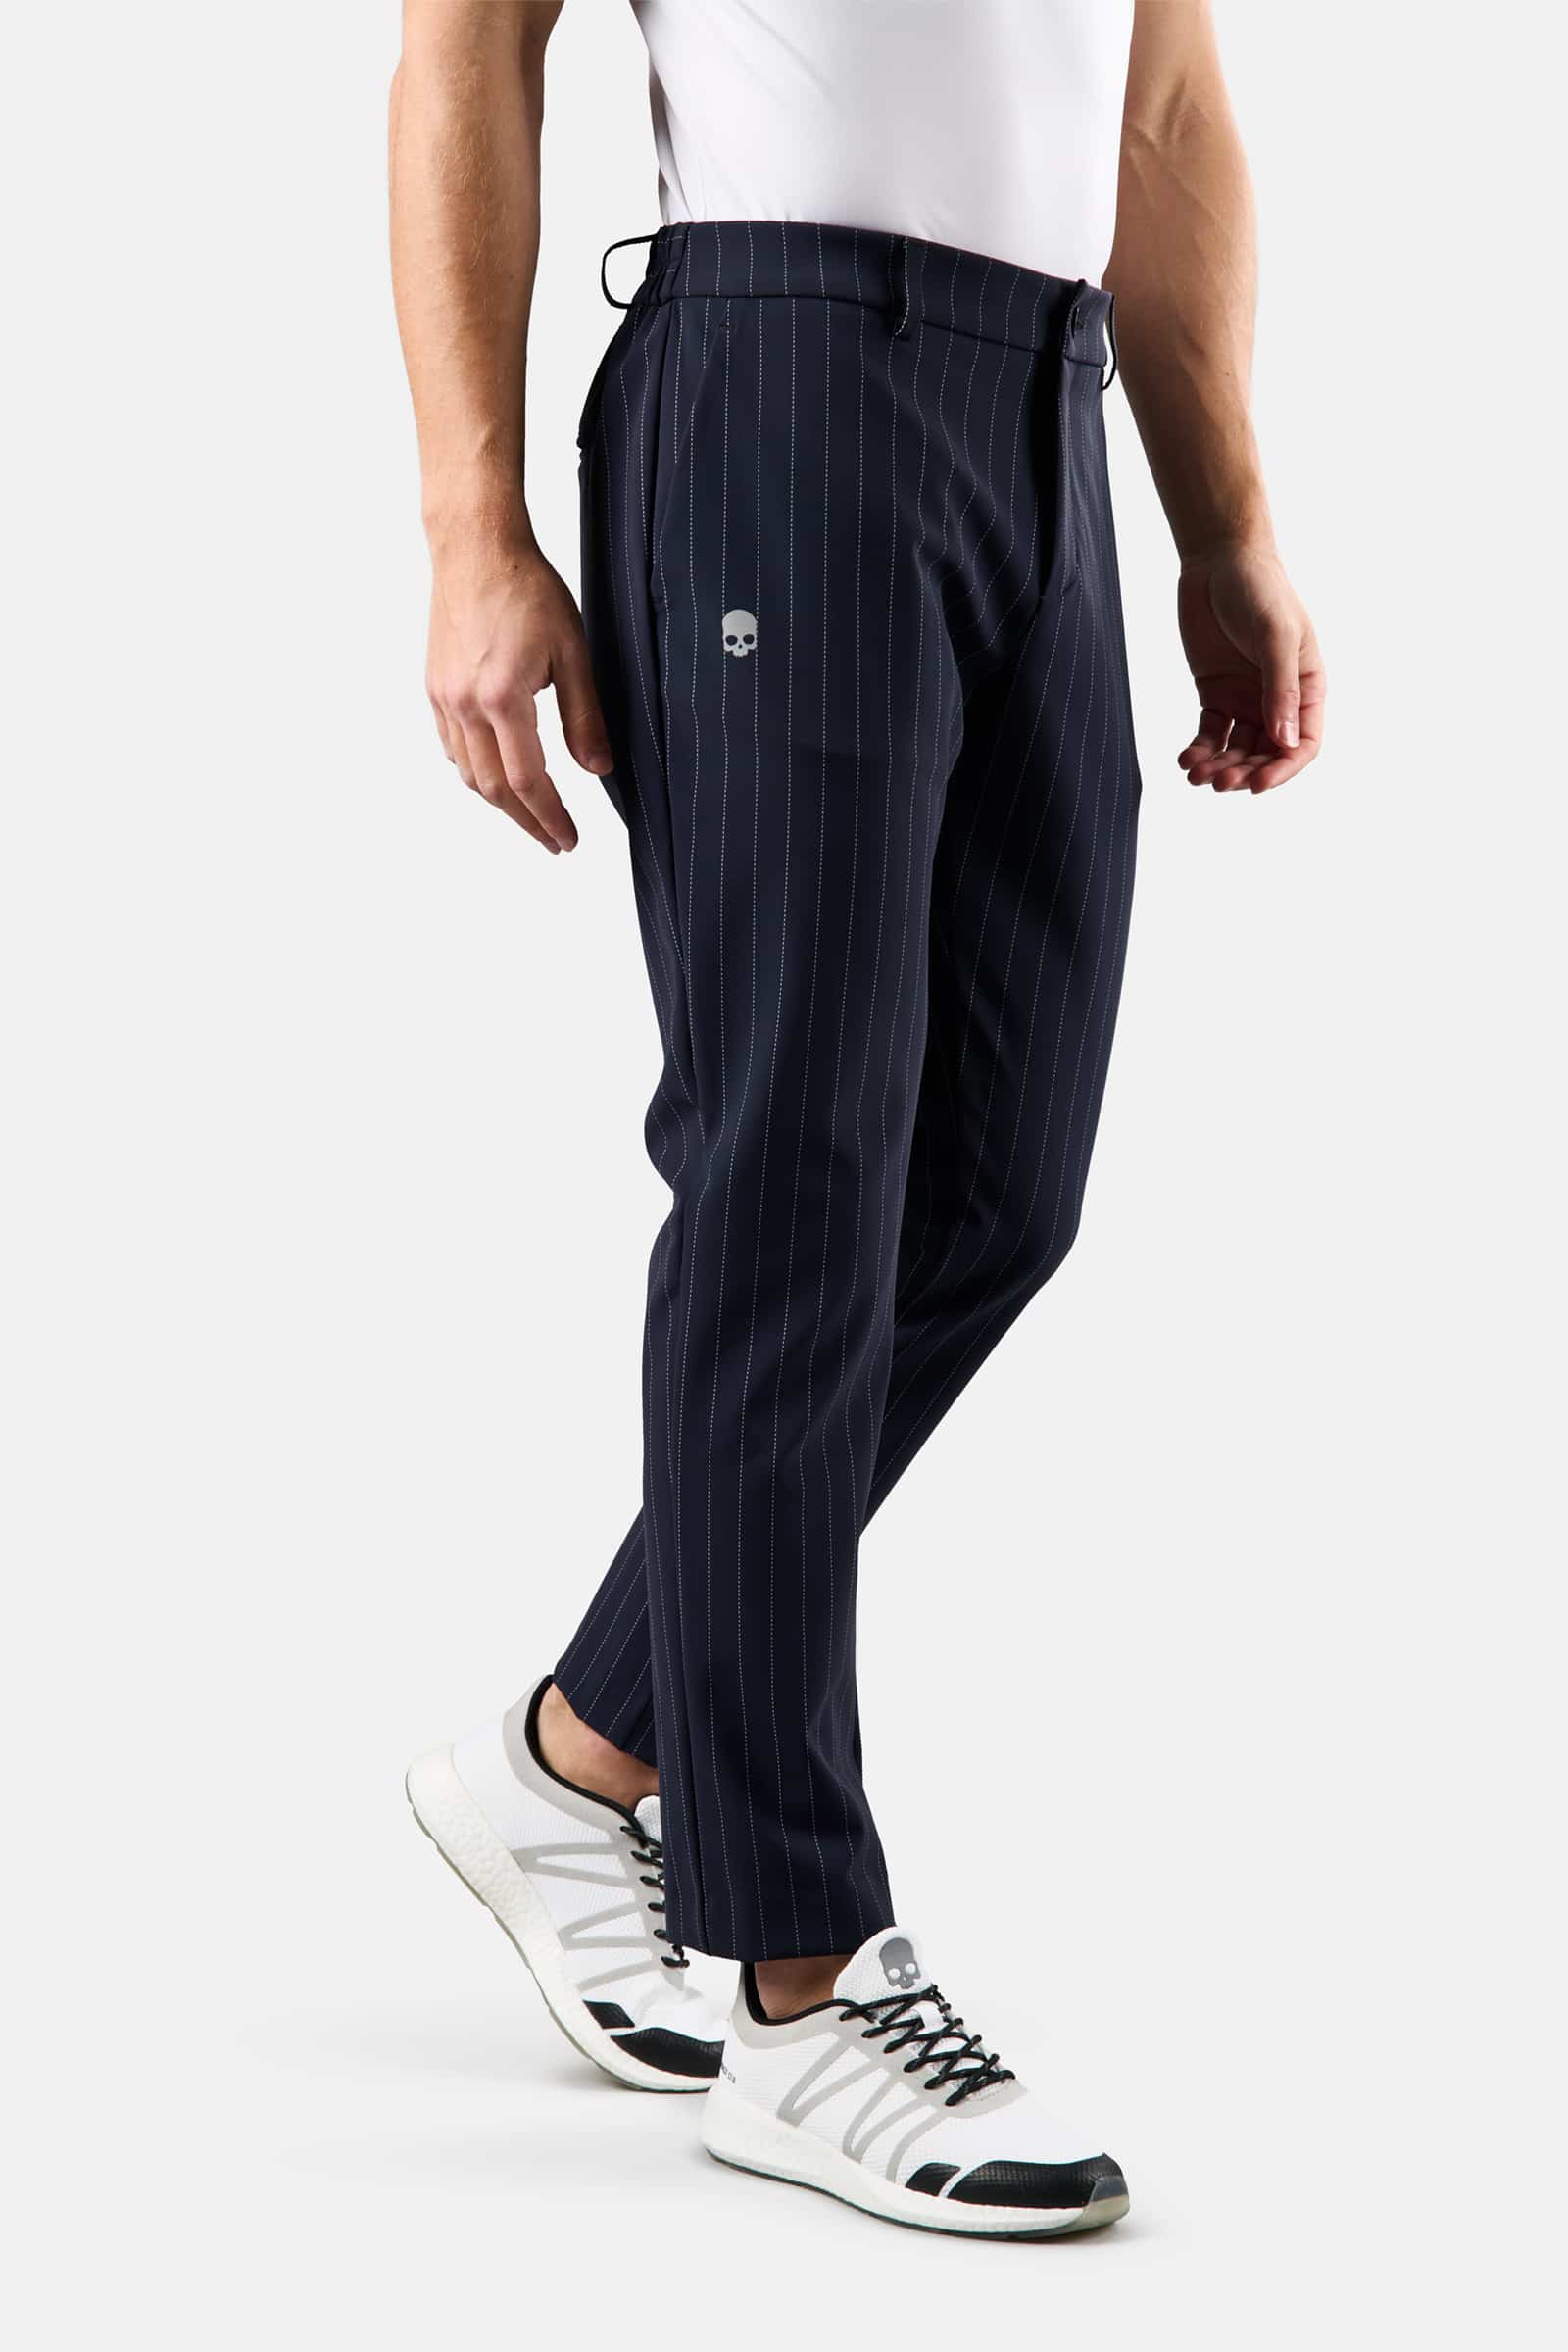 black pinstripe pants | Nordstrom